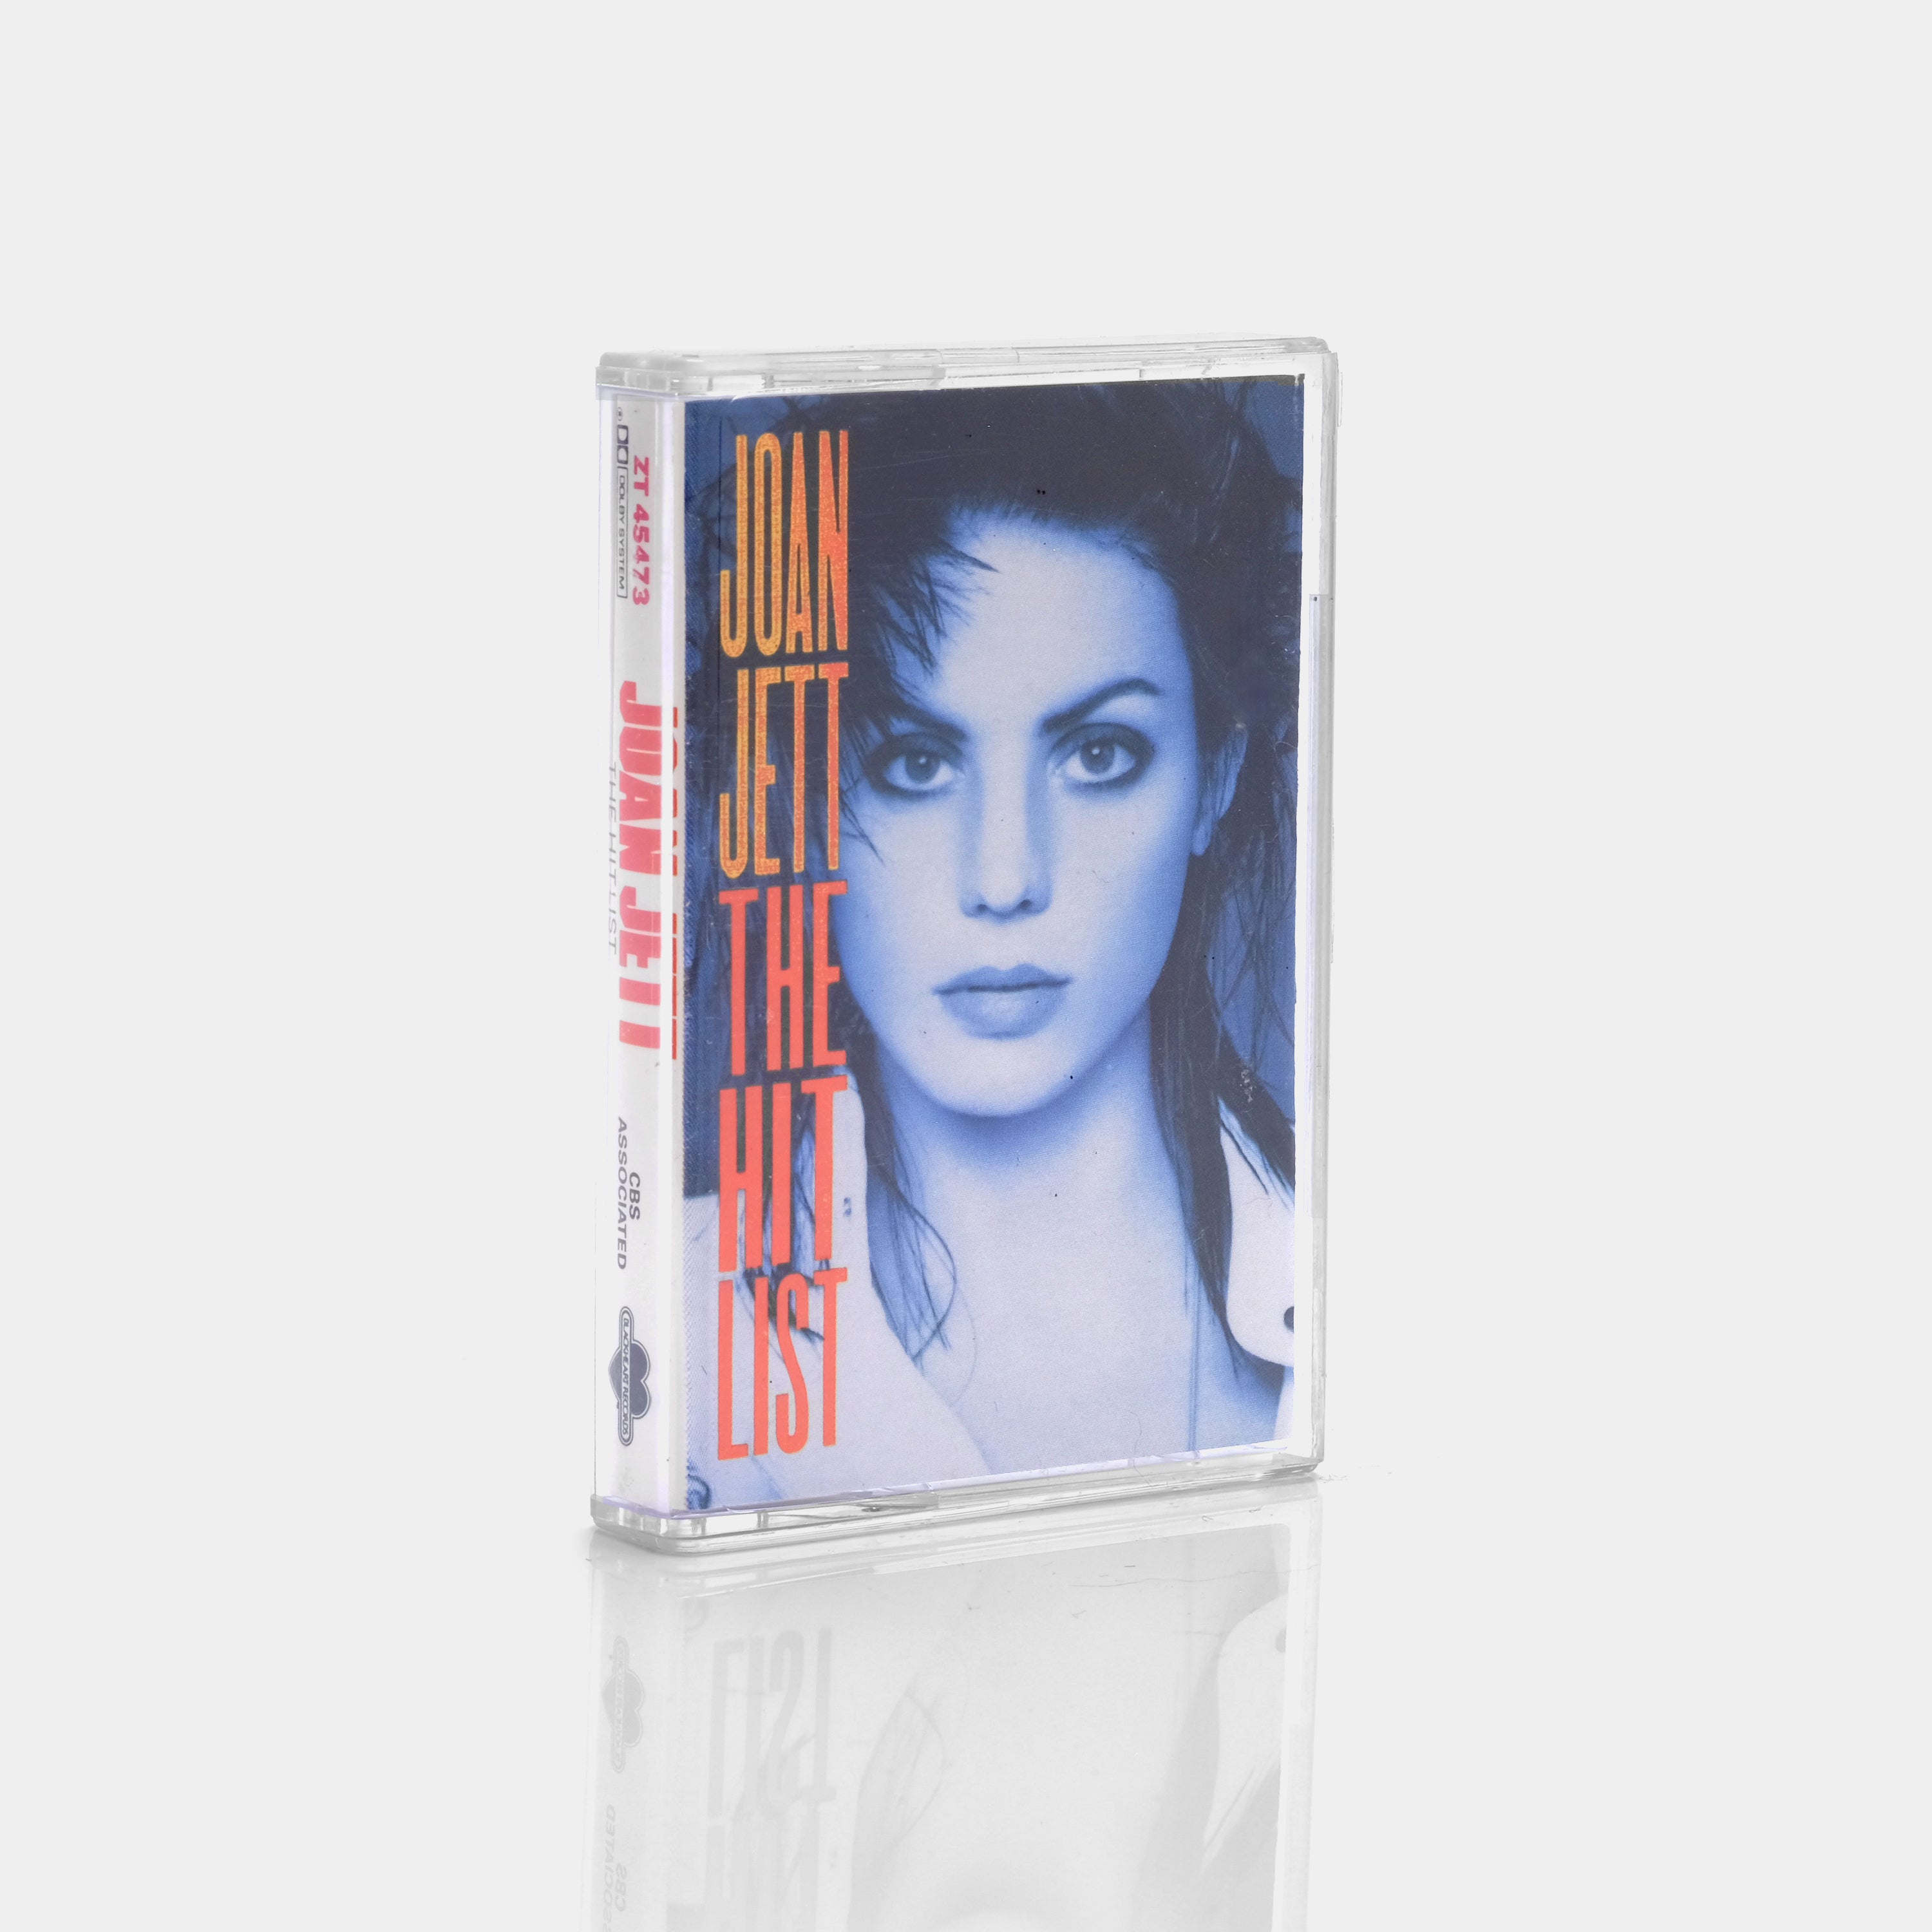 Joan Jett - The Hit List Cassette Tape